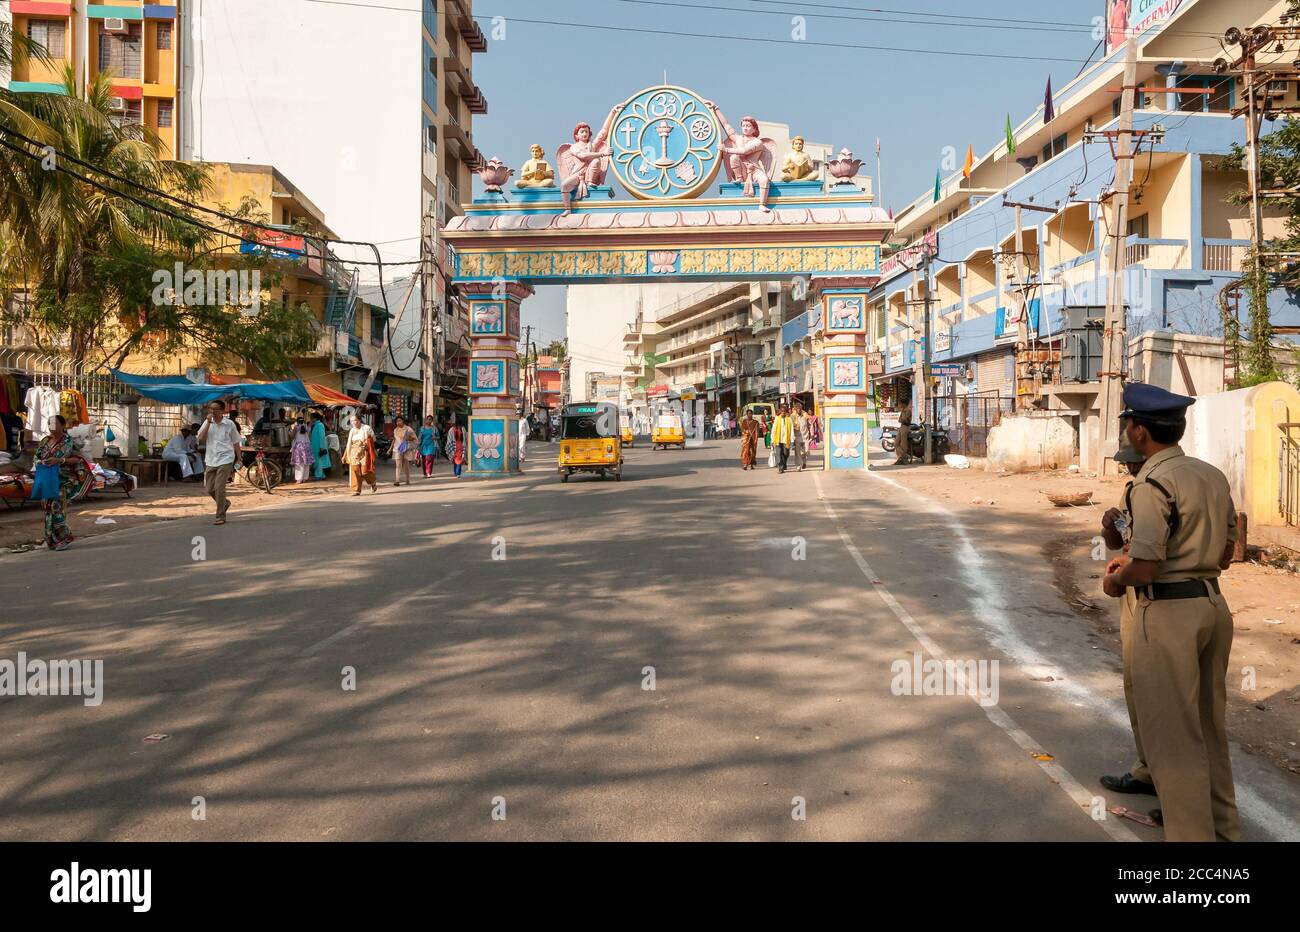 Puttaparthi, Andhra Pradesh, Inde - 11 janvier 2013 : l'arche symbolique pour accéder au village de Puttaparthi, scène urbaine, Inde Banque D'Images